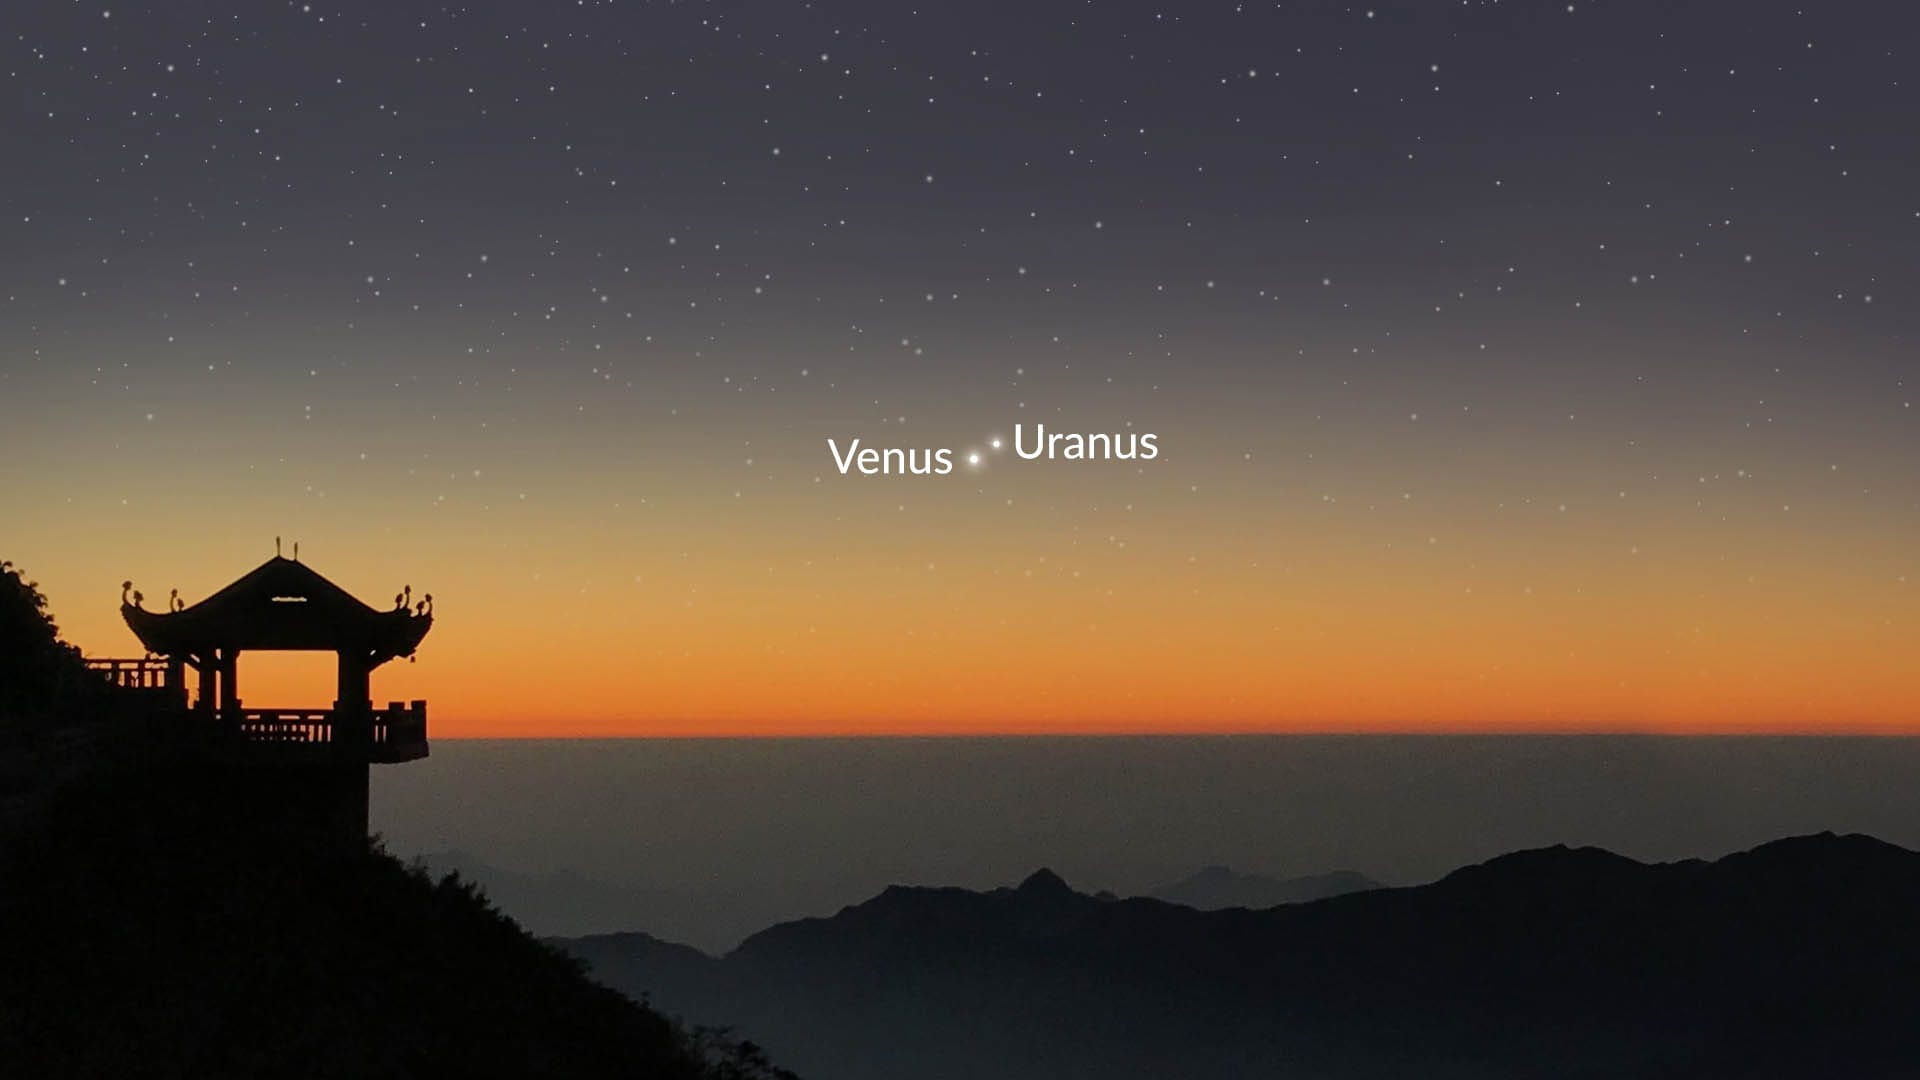 Conjunction of Venus and Uranus